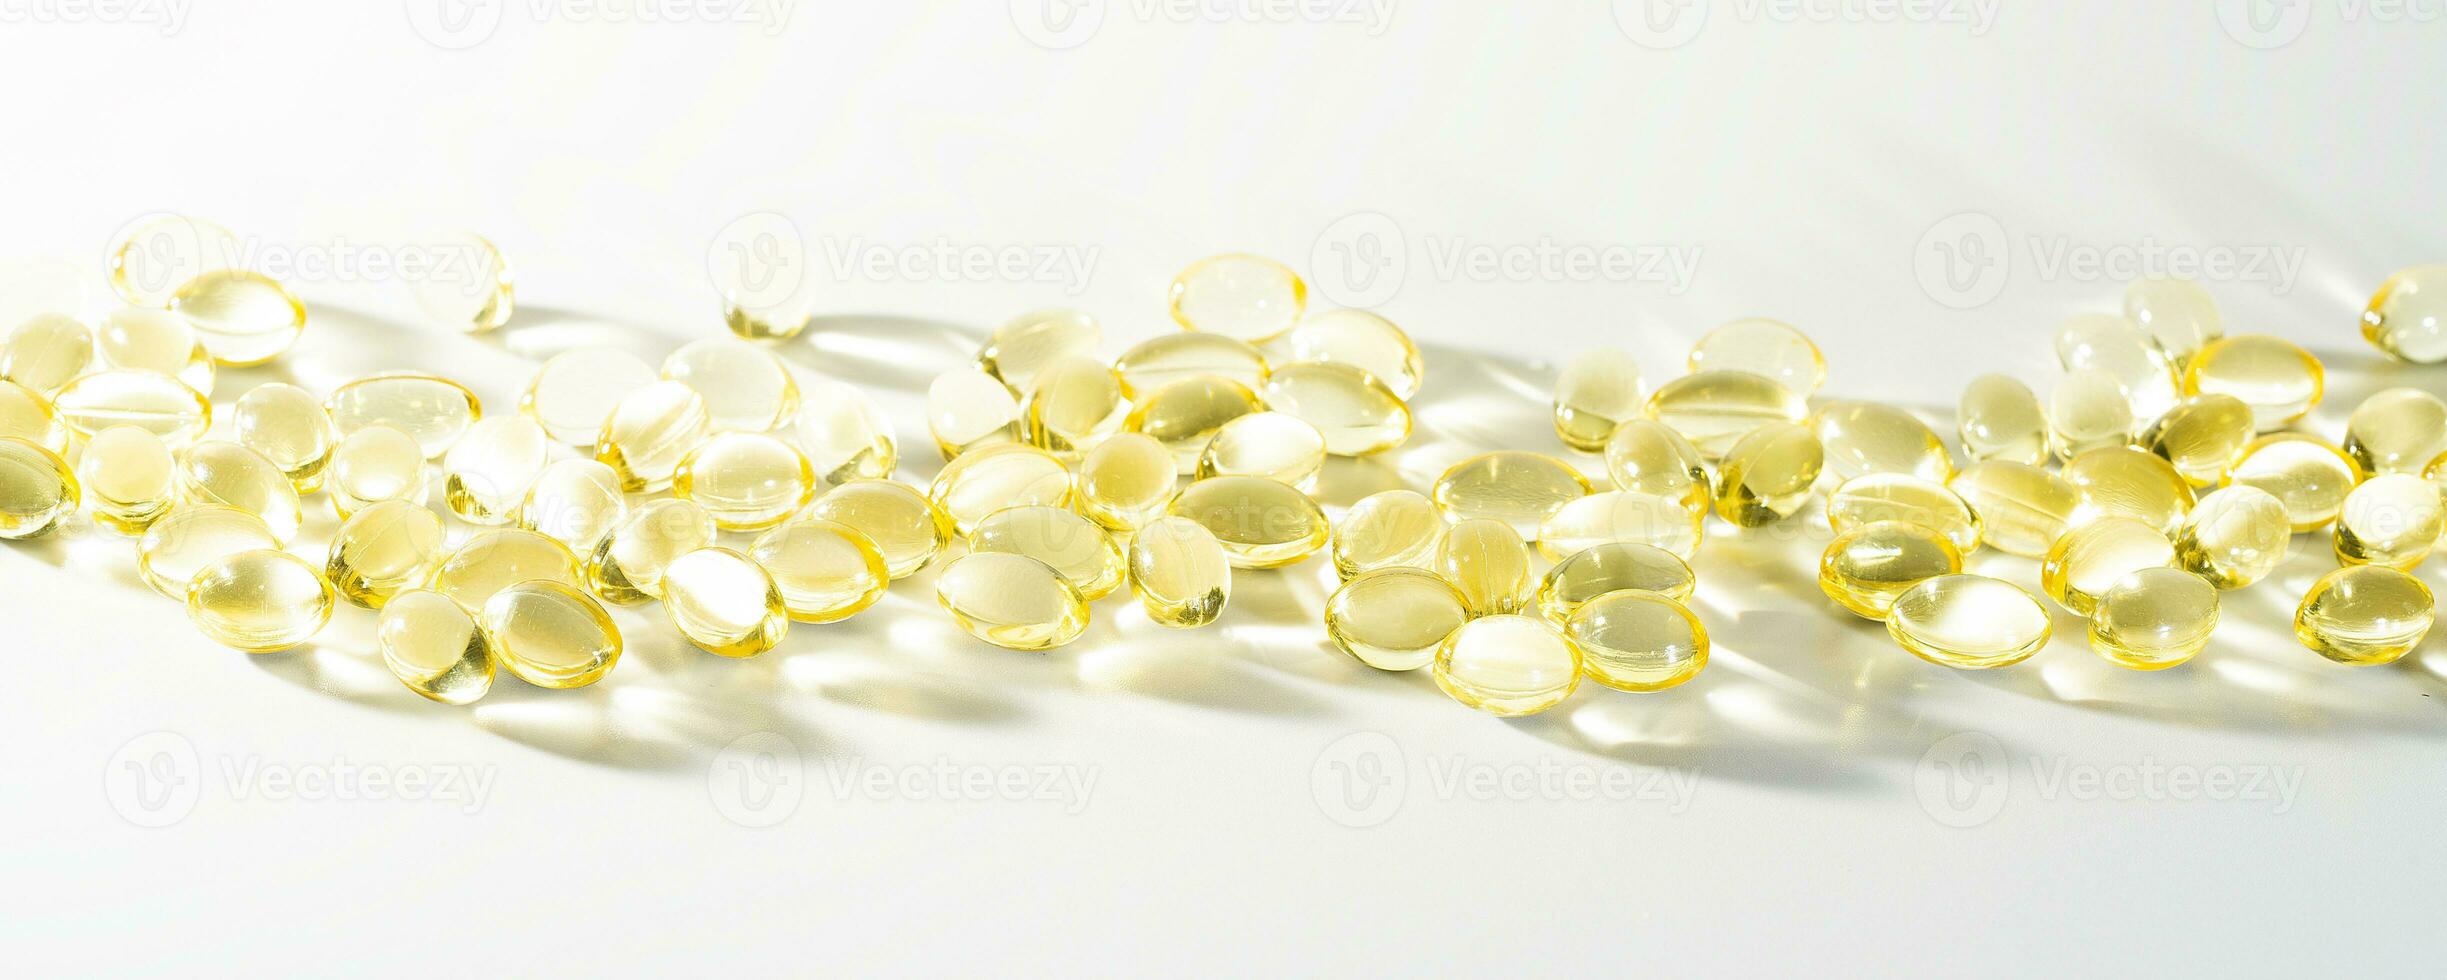 vitamine d, oméga 3, oméga 6, complément alimentaire oil filled fish oil, vitamine a, vitamine e, huile de lin. photo